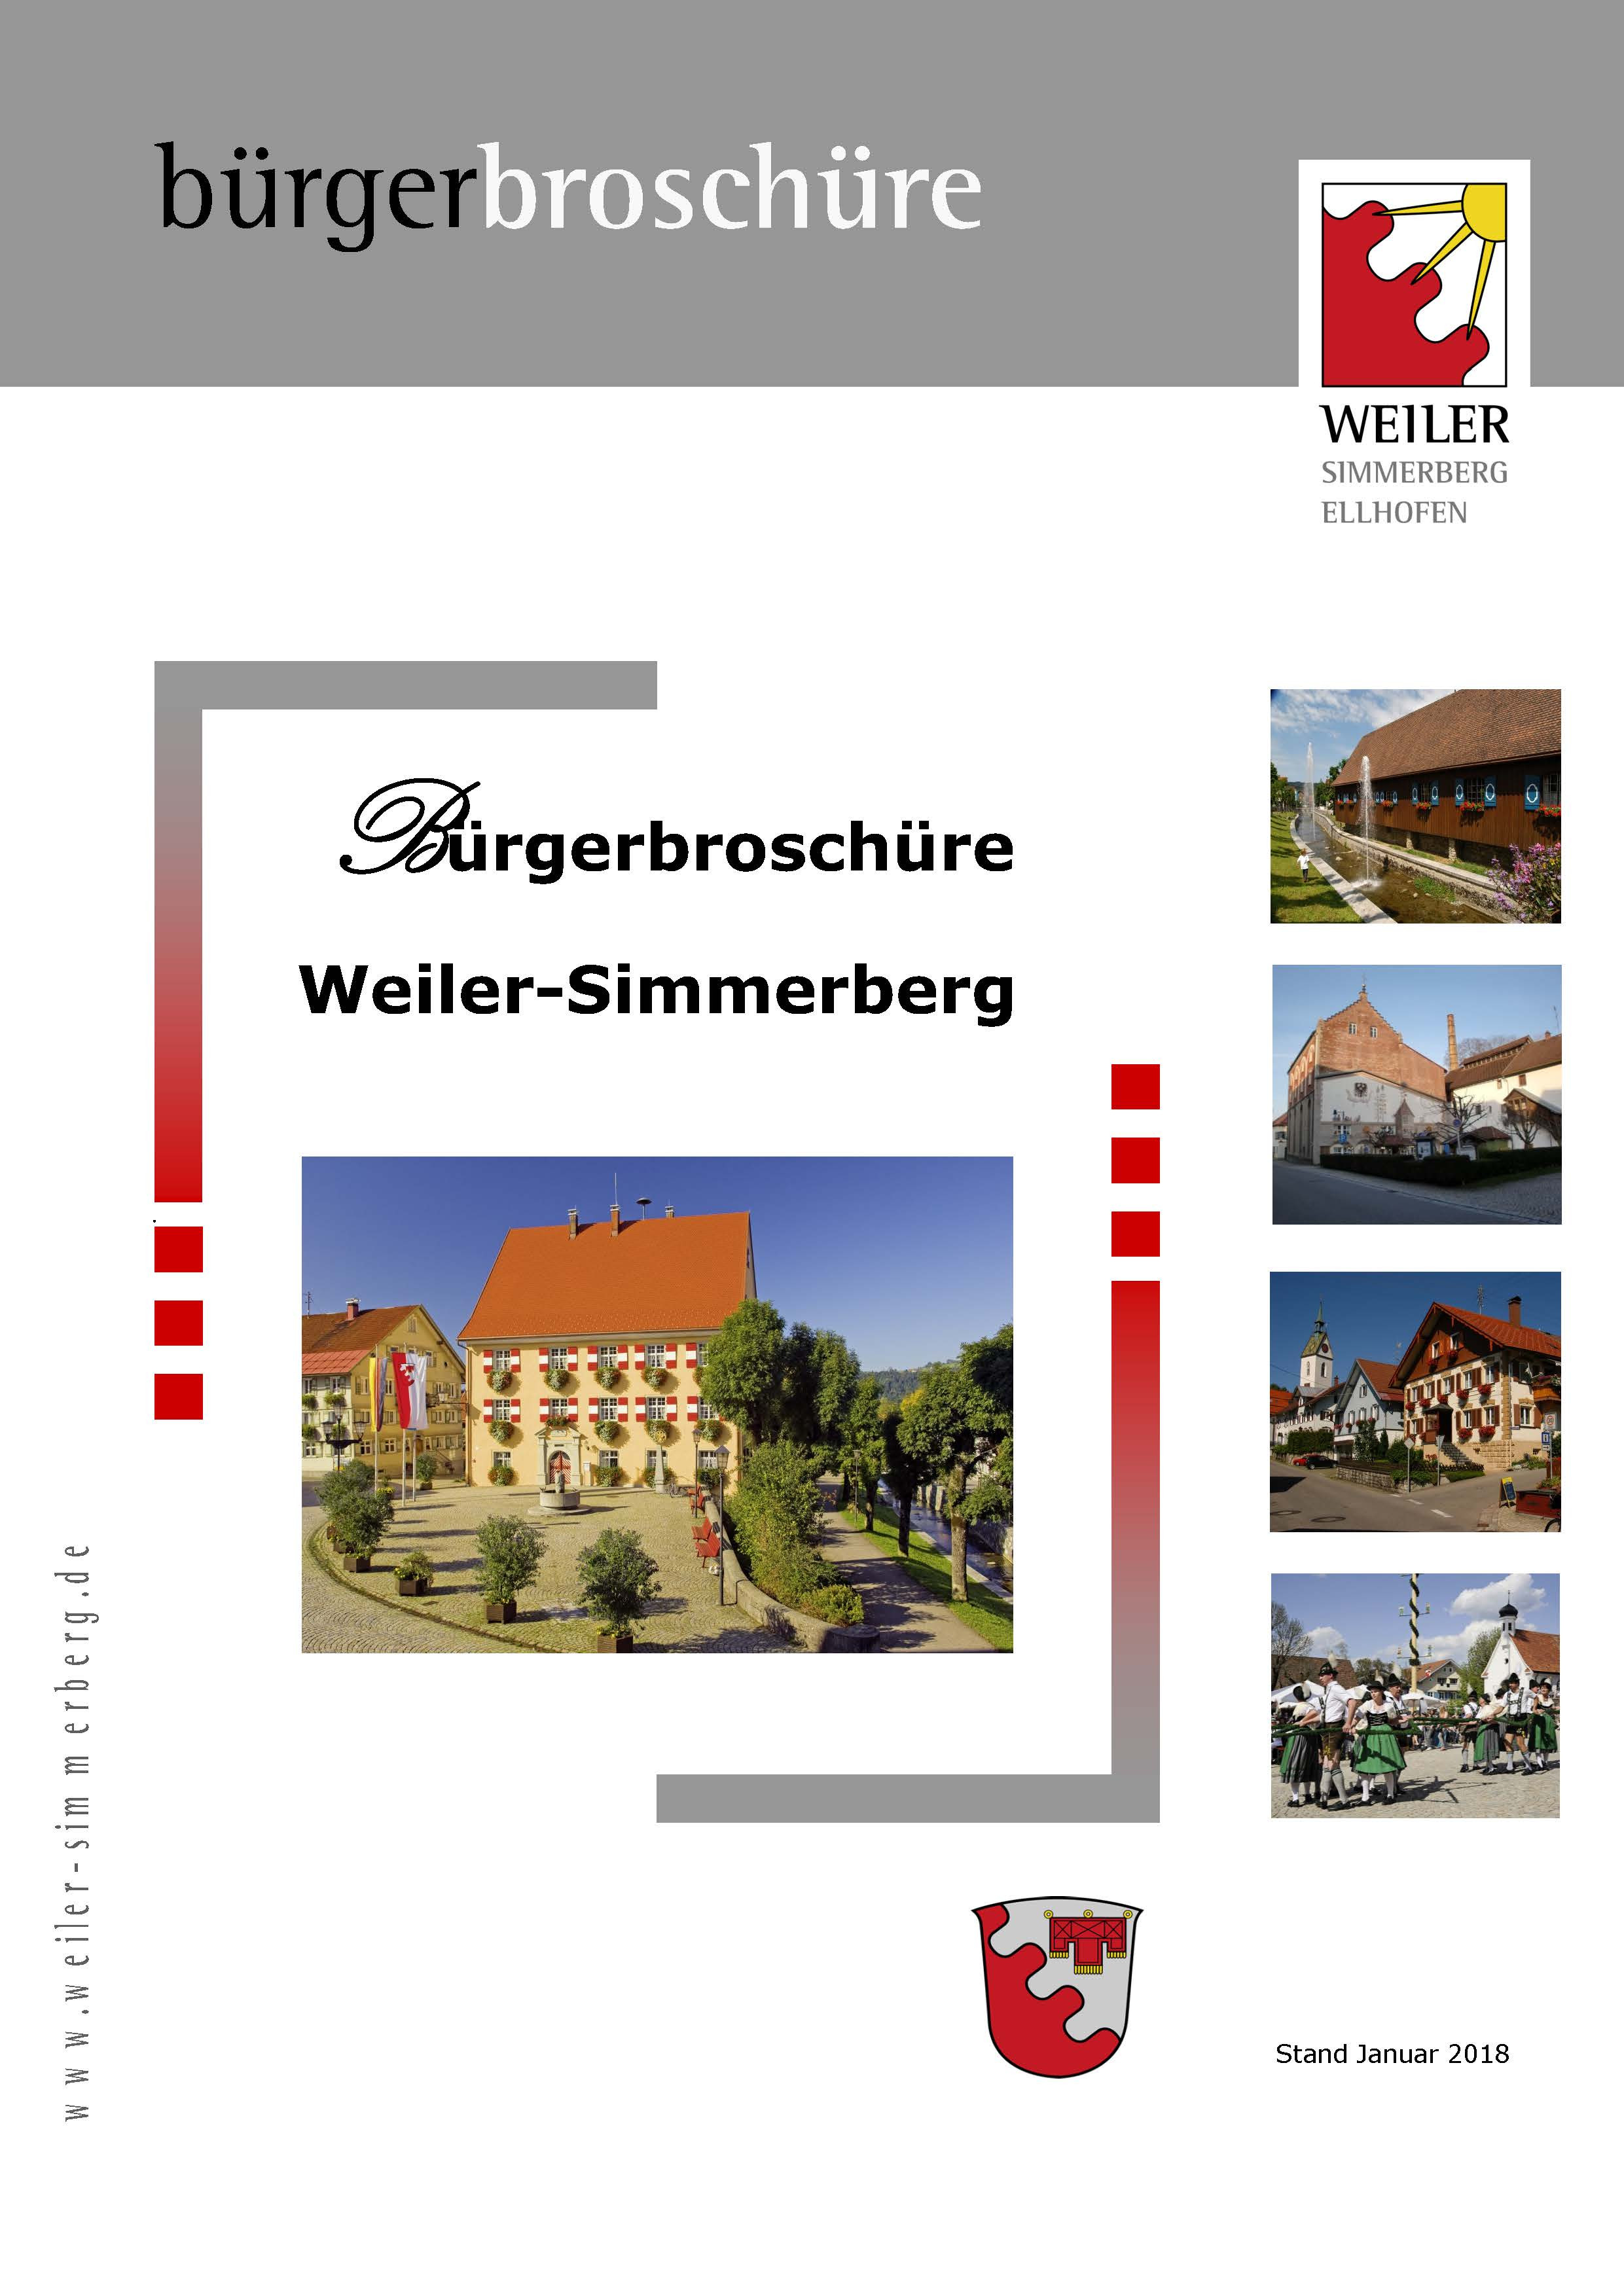  Auf dem Deckblatt Neubürgerbroschüre ist das Rathaus von Weiler im Allgäu in der Mitte abgebildet, auf der rechten Seite befinden sich von oben nach unten kleinere Bilder von Gebäuden des Marktes Weiler-Simmerberg 